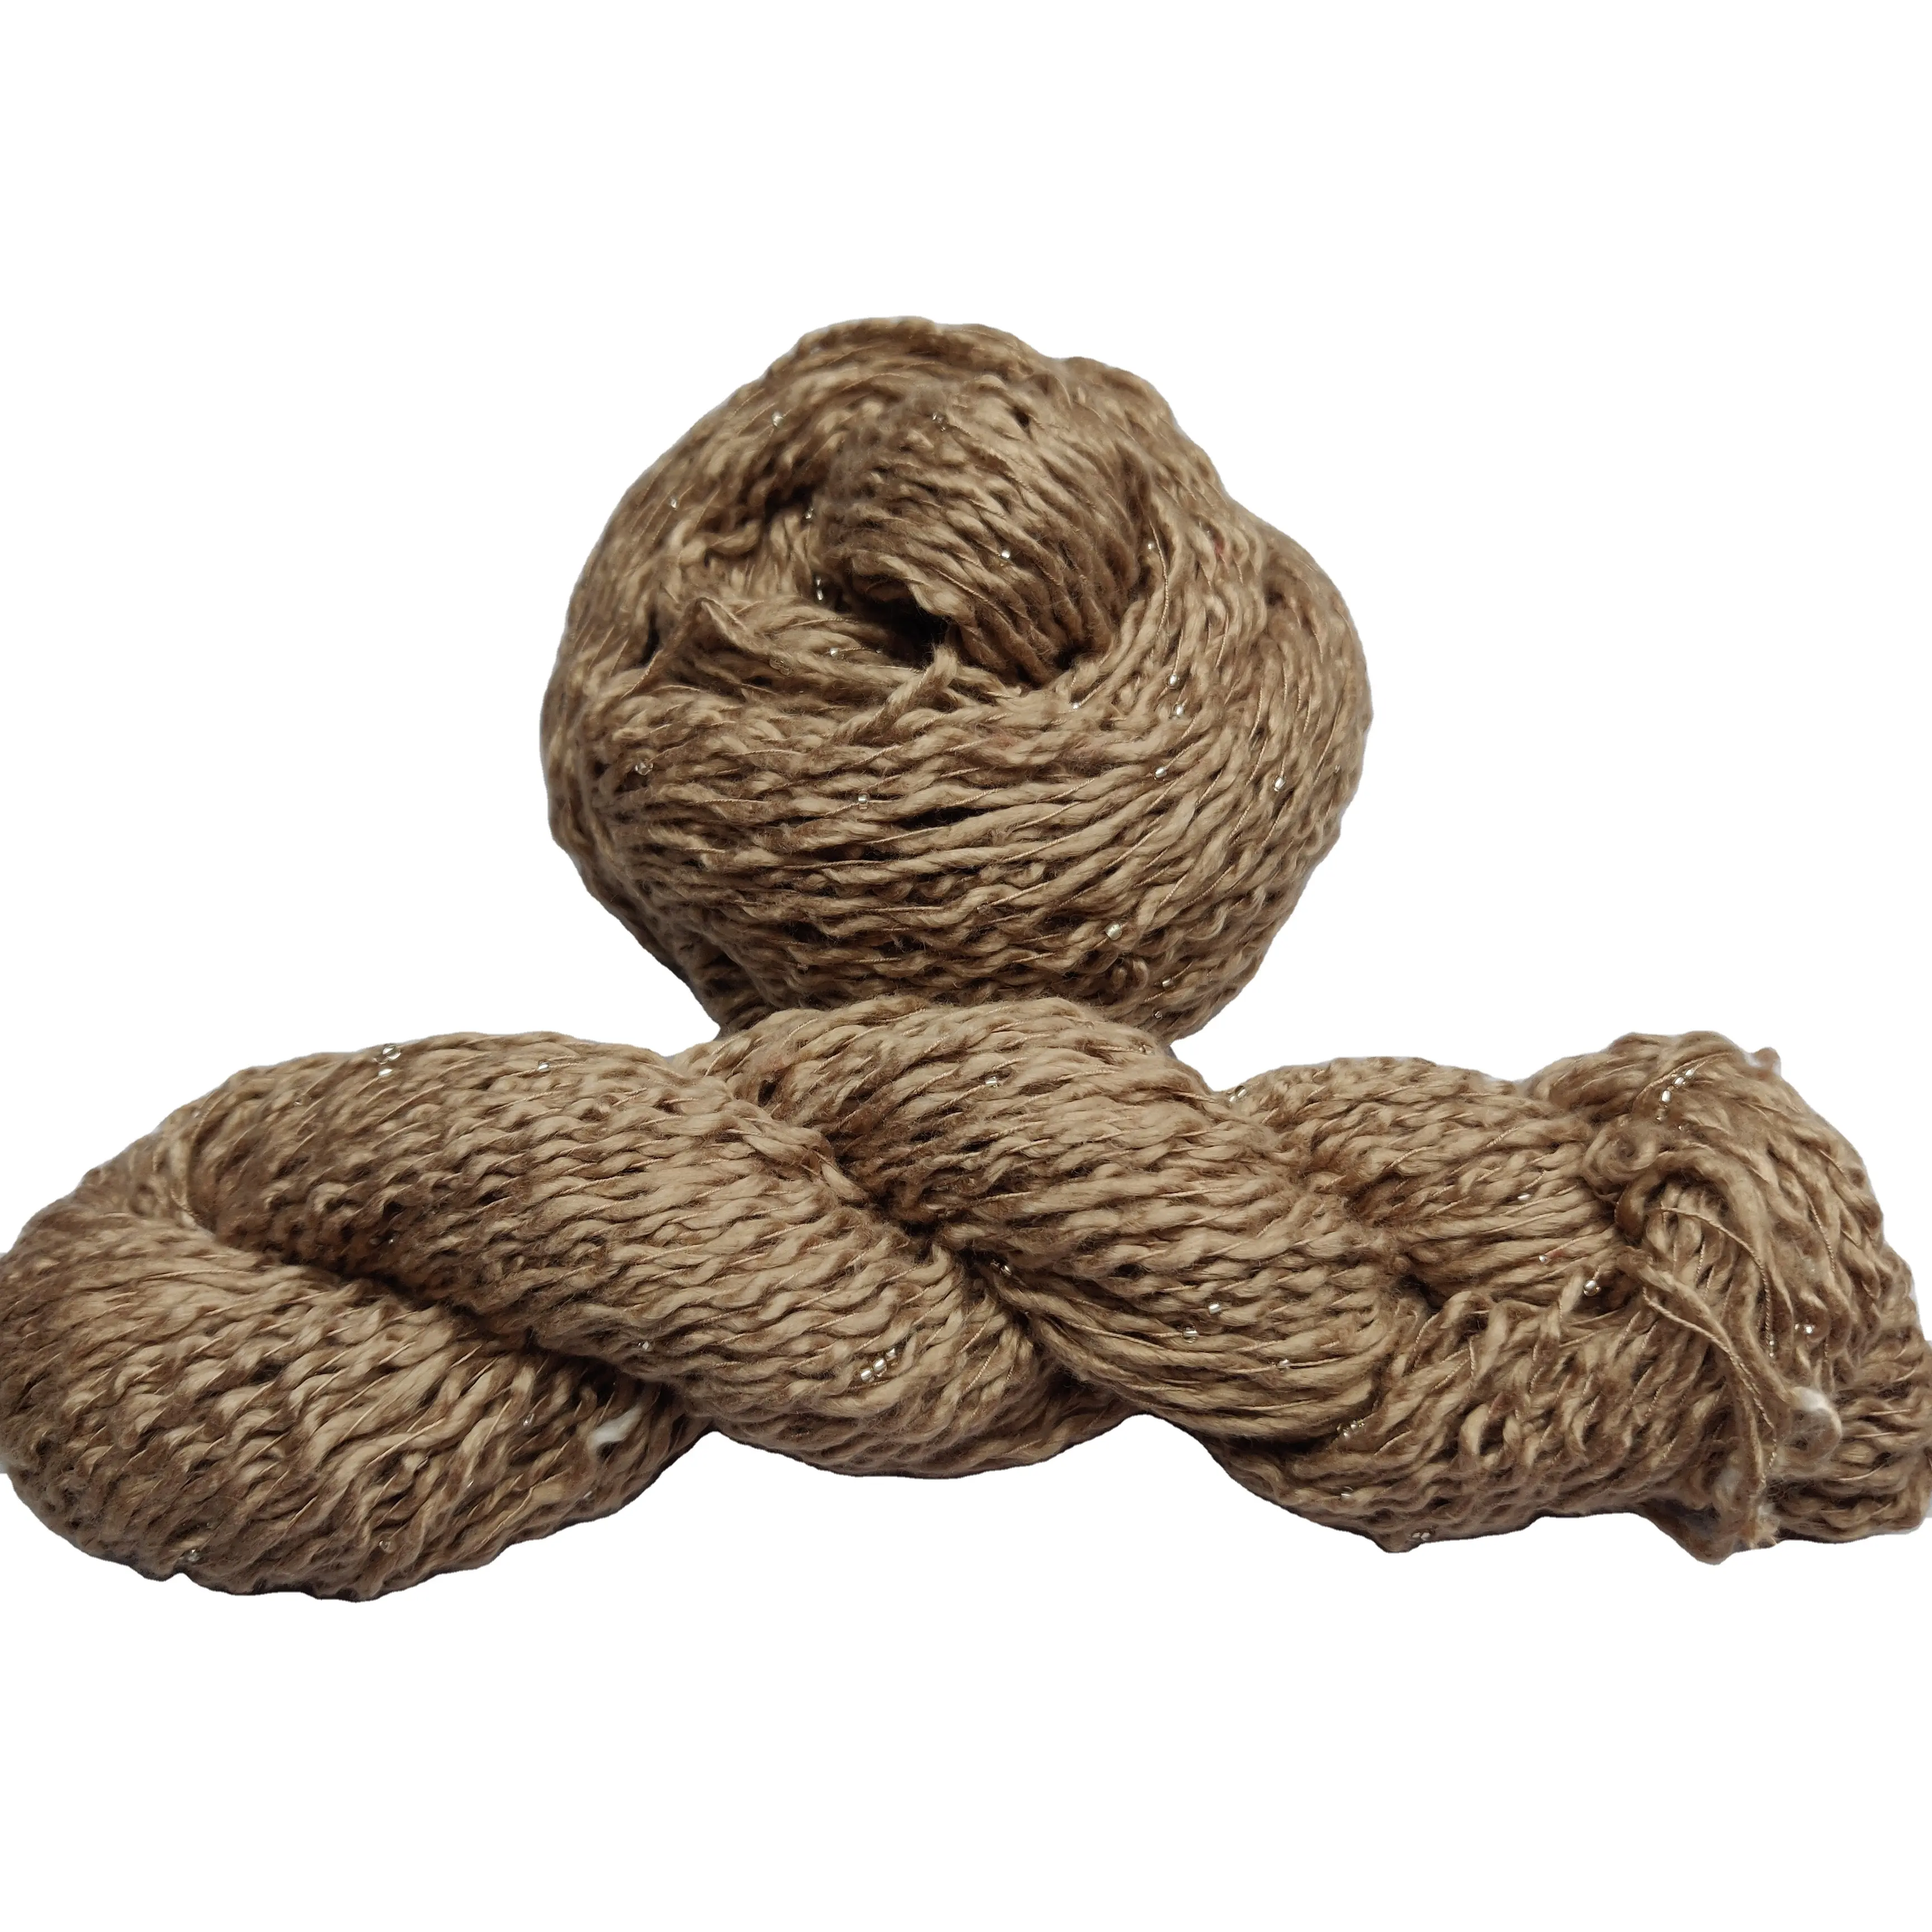 Fil de soie embellissé 100 soie brute de mûrier de qualité pour tricoter des sacs à anneaux broderie Anti-technique Style motif à la main